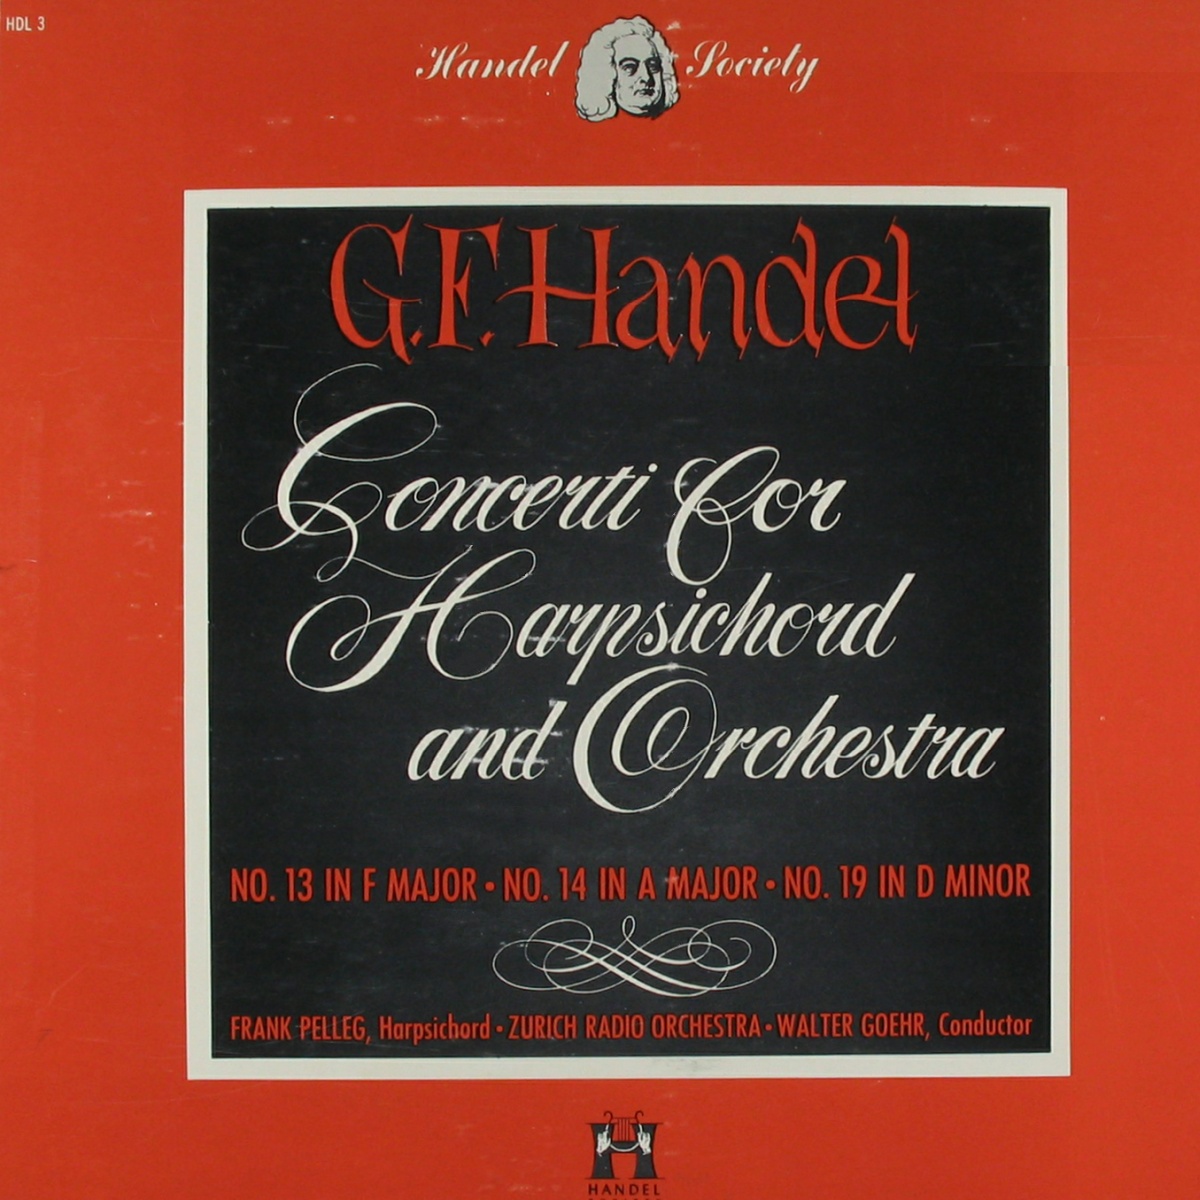 Recto de la pochette du disque Handel Society HDL 3